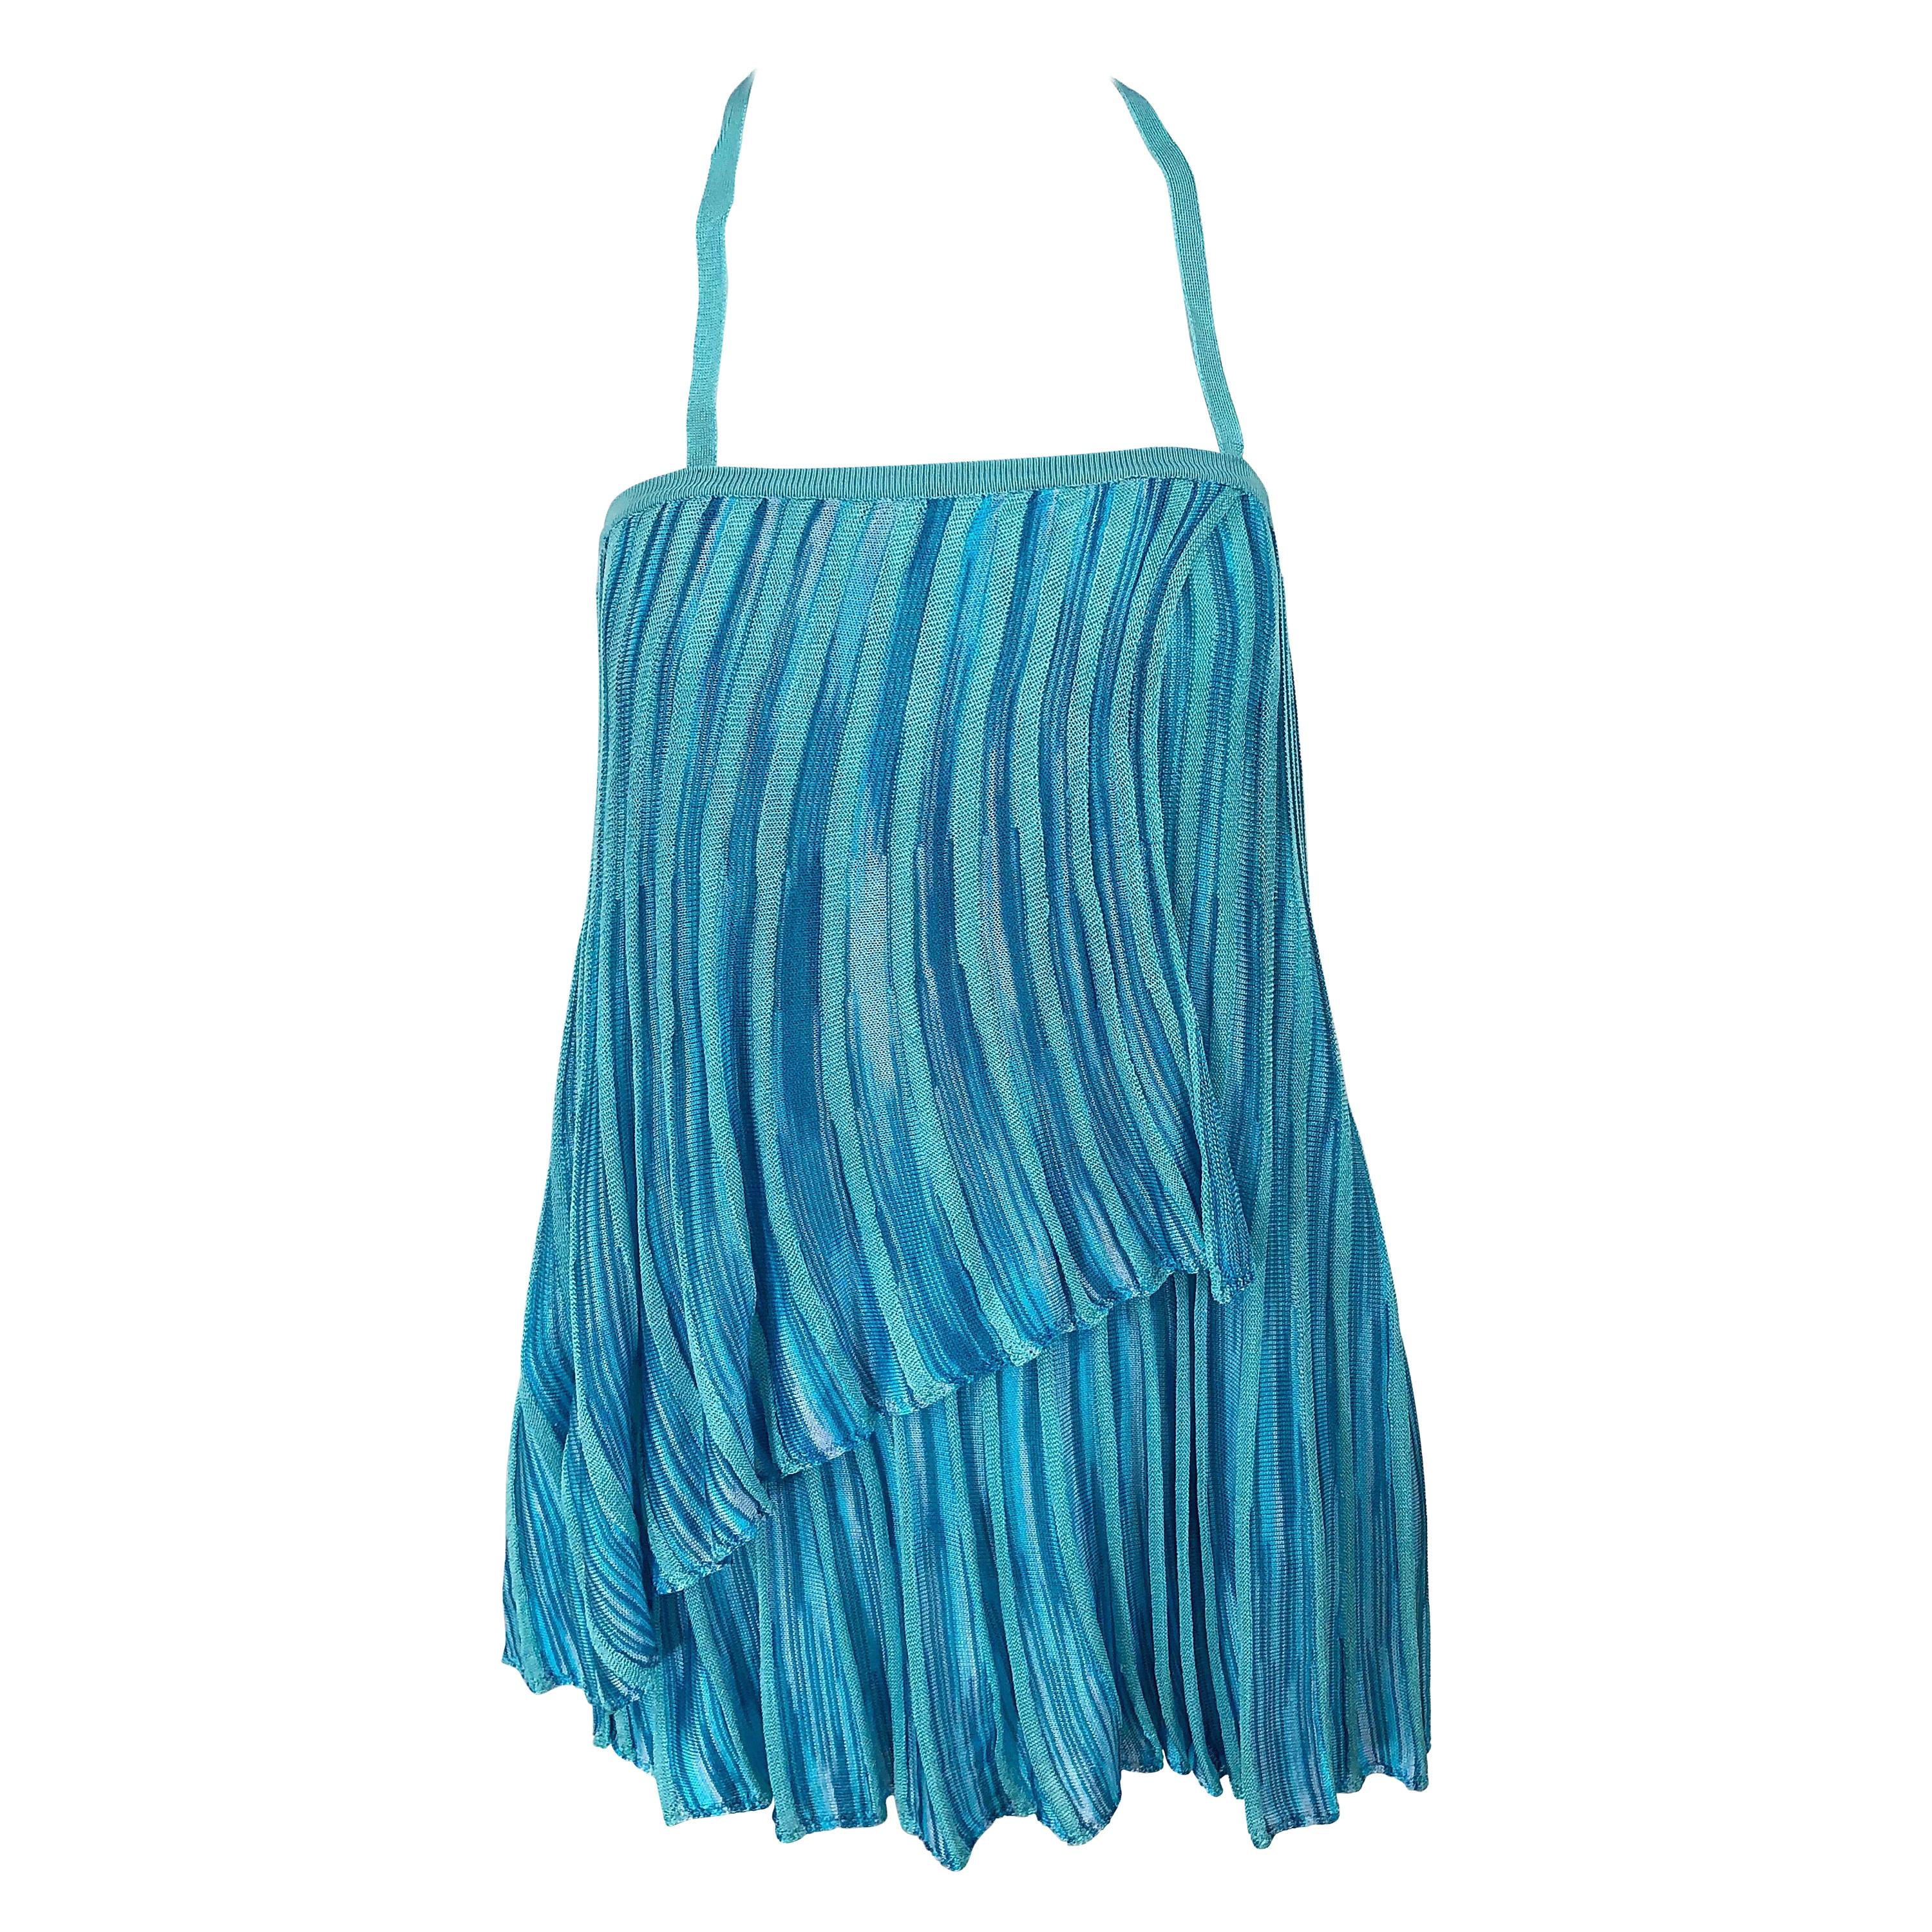 Vintage Missoni 1990s Turquoise Teal Blue Knit Vintage 90s Halter Top OR Skirt